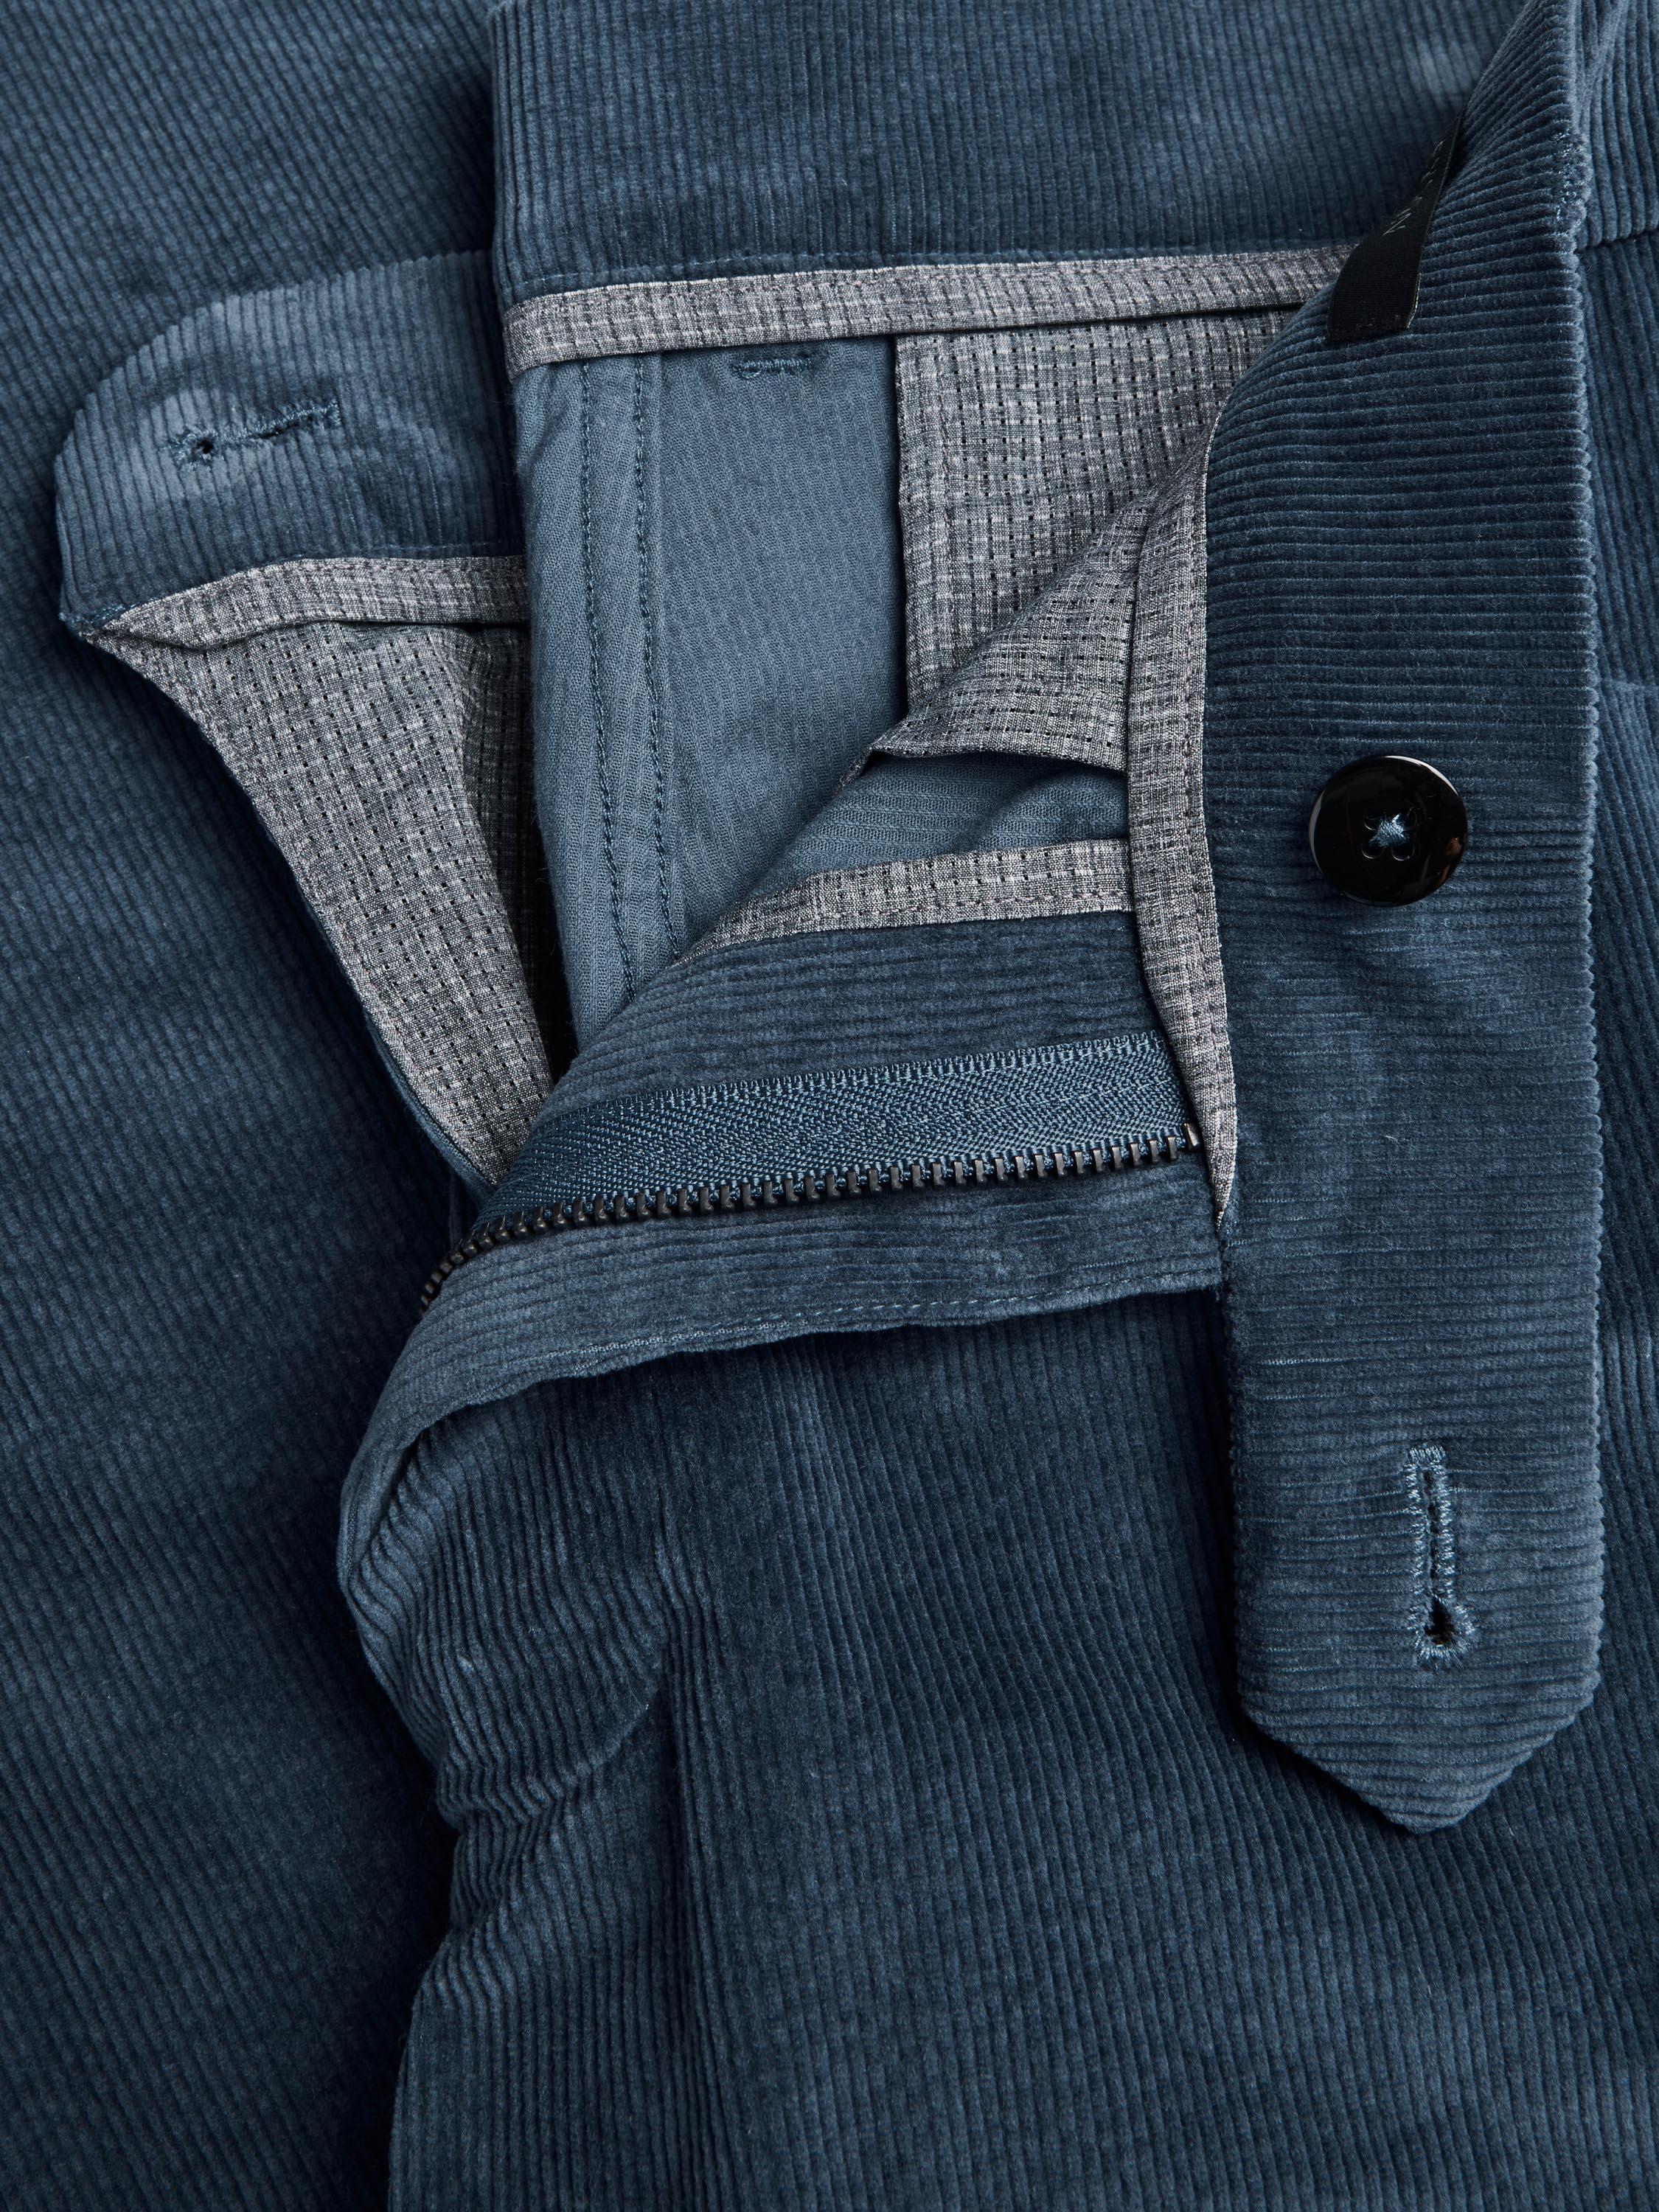 60's Corduroy Trouser - Blue | Levi's® US